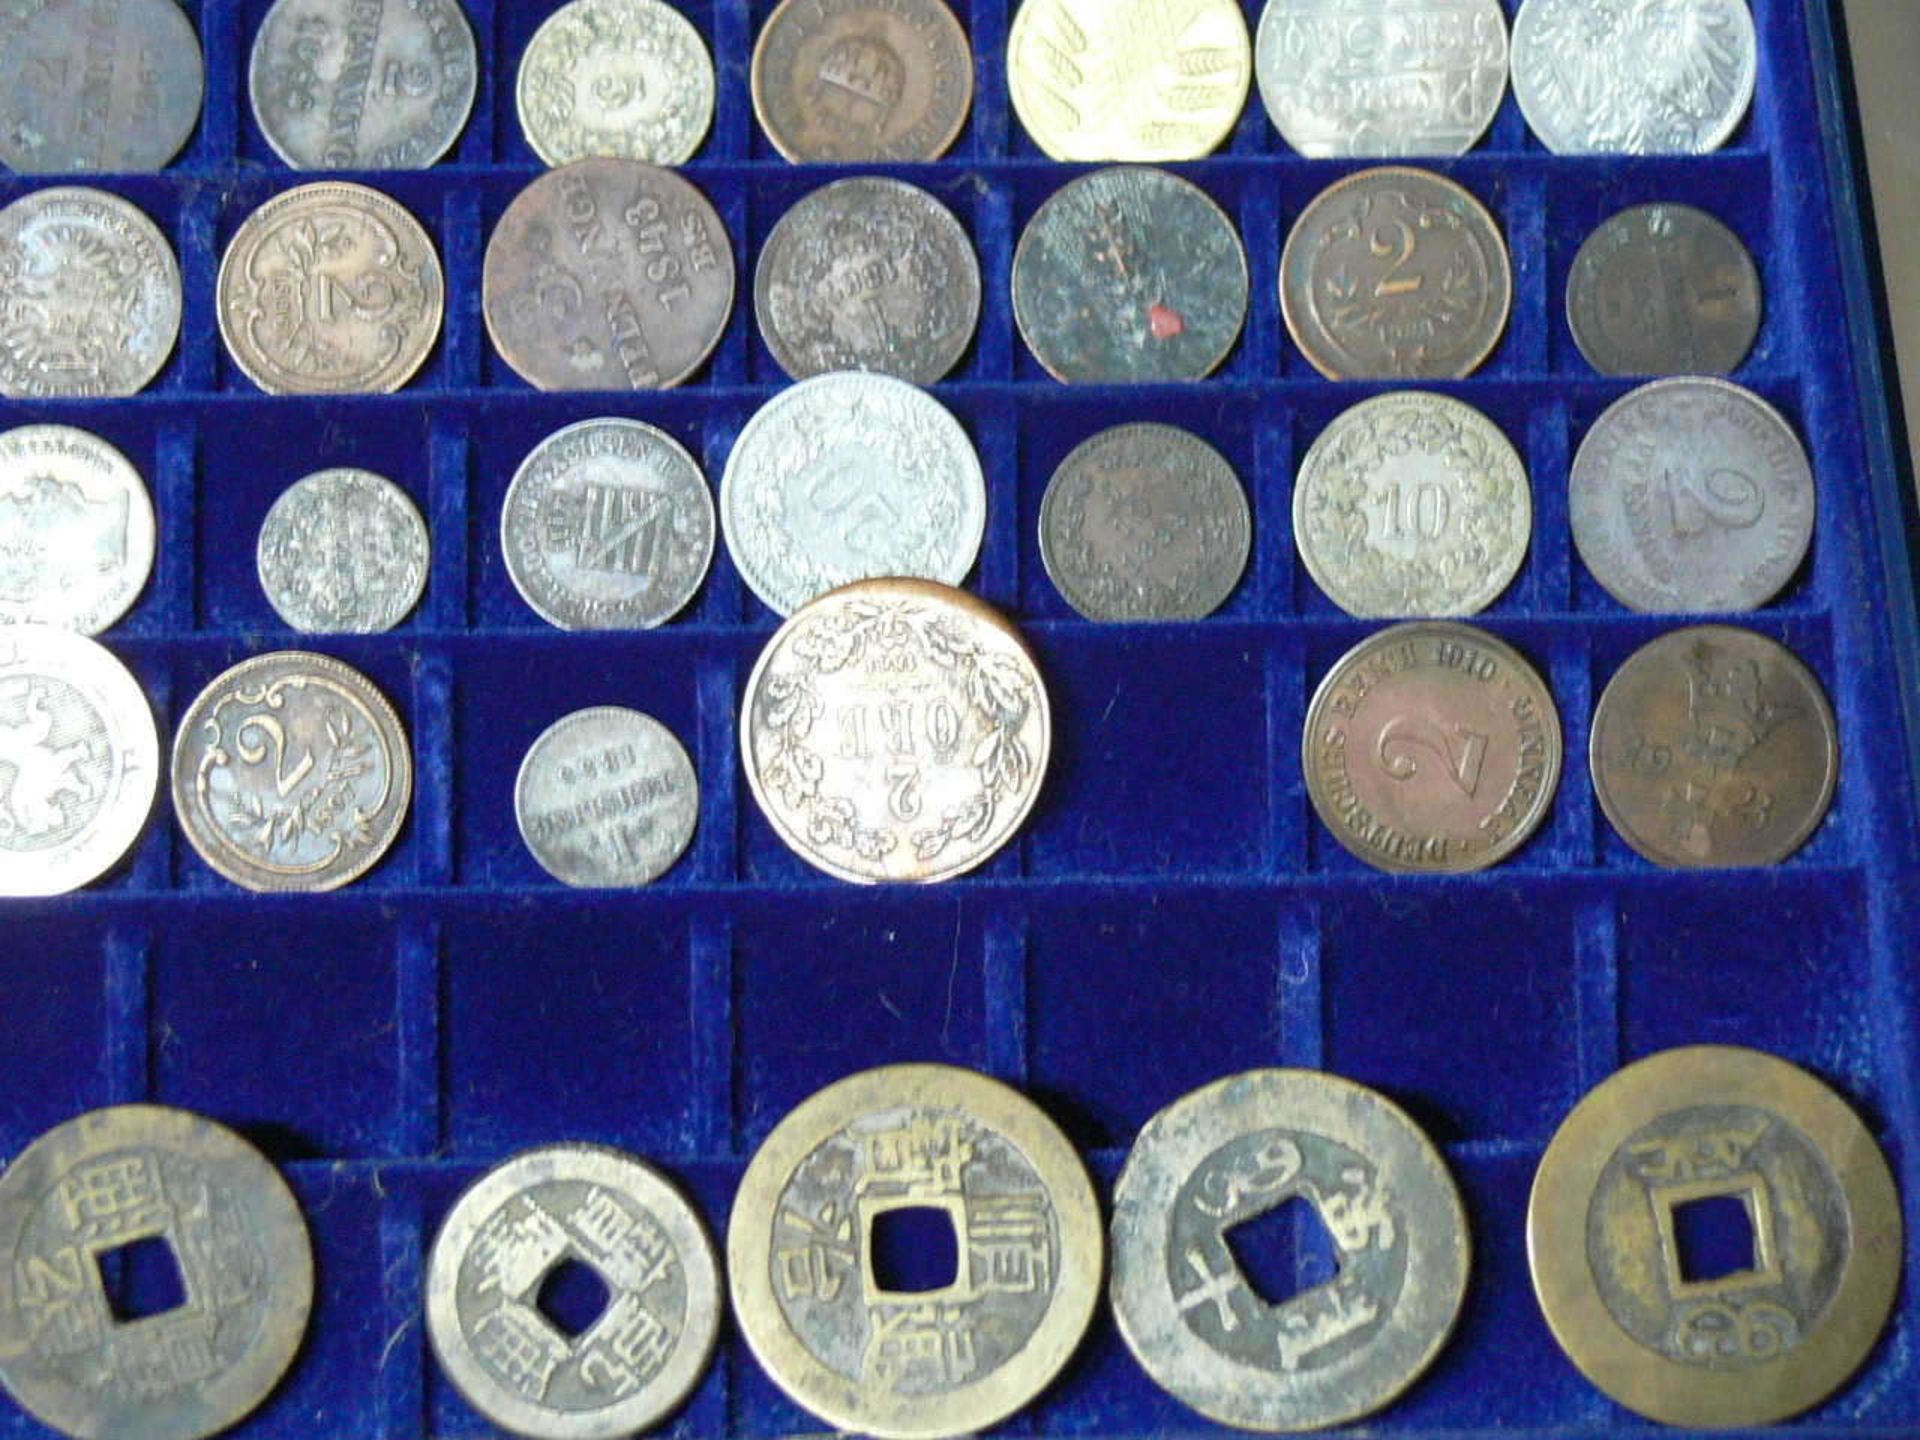 Großes Lot alte Münzen aus aller Welt aus dem 17. bis 19. Jahrhundert. Über 100 Stück. Darunter u. - Bild 5 aus 6